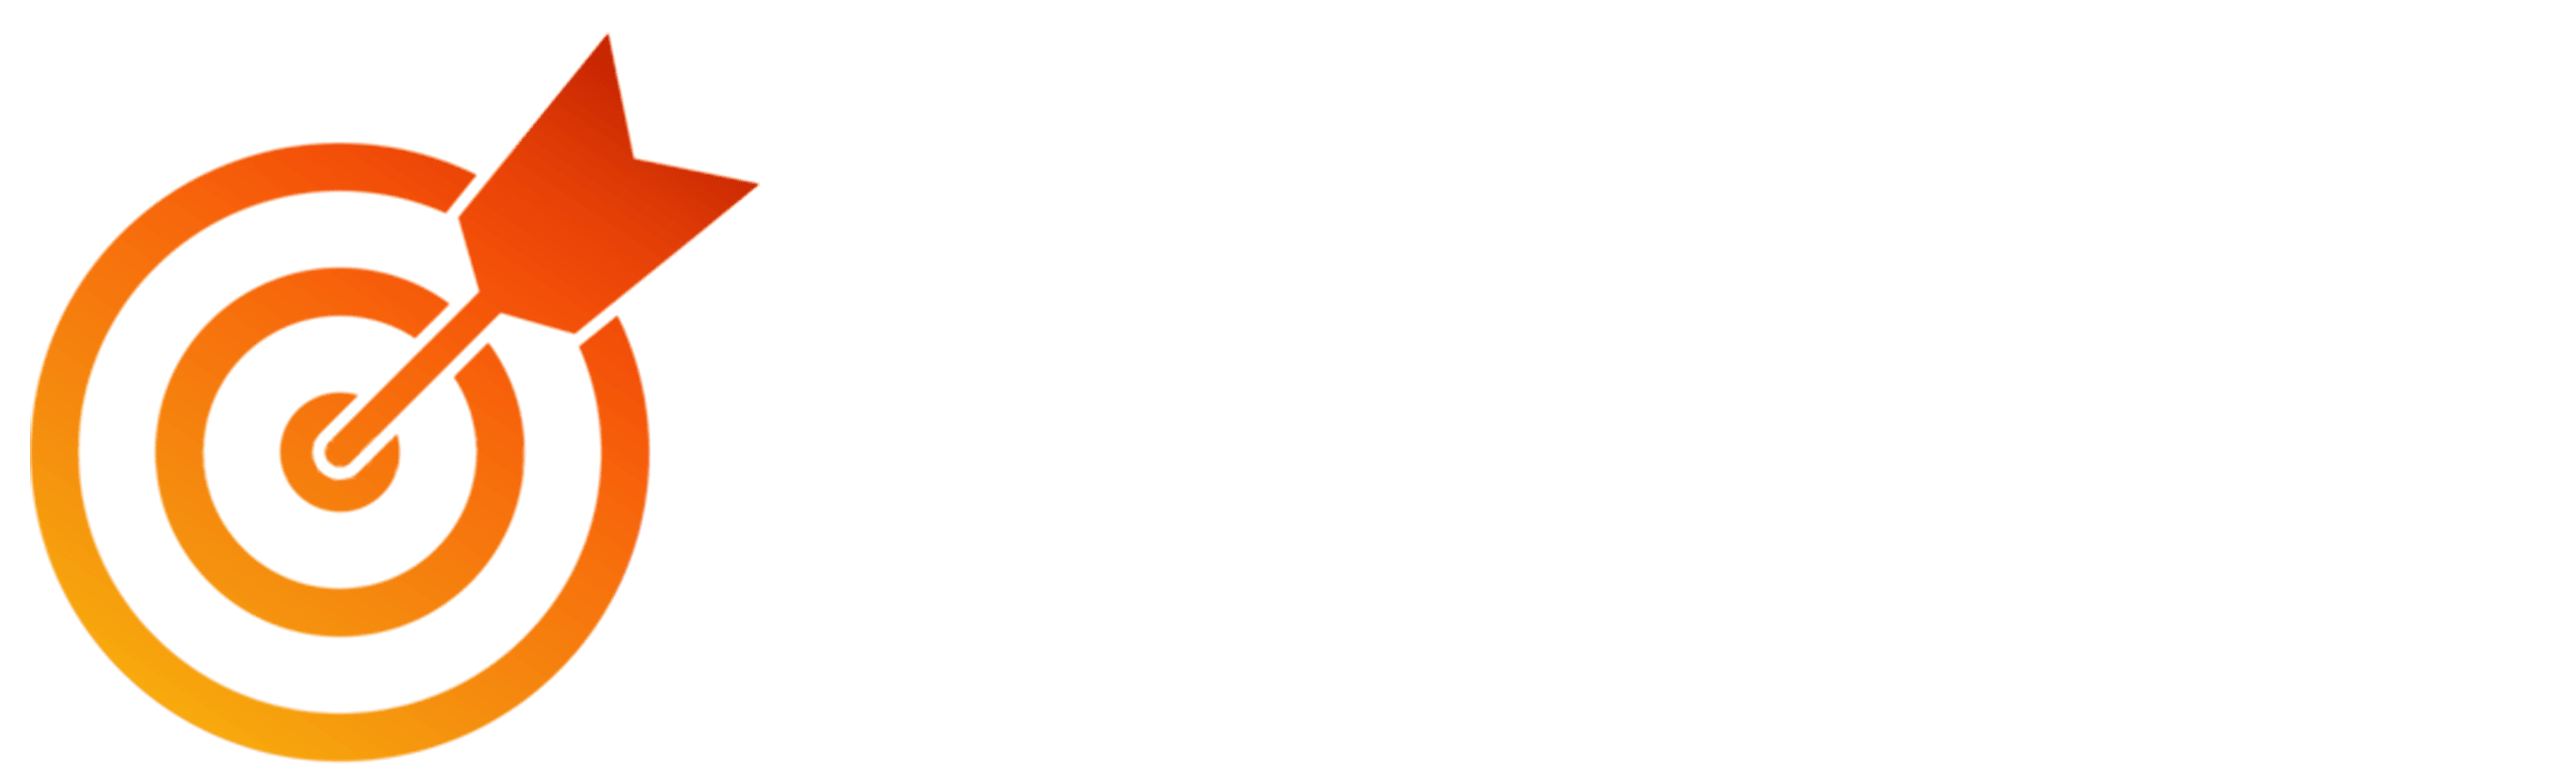 FUTTBOT - Best FUT enhancer, autopilot buyer, sniper, seller and